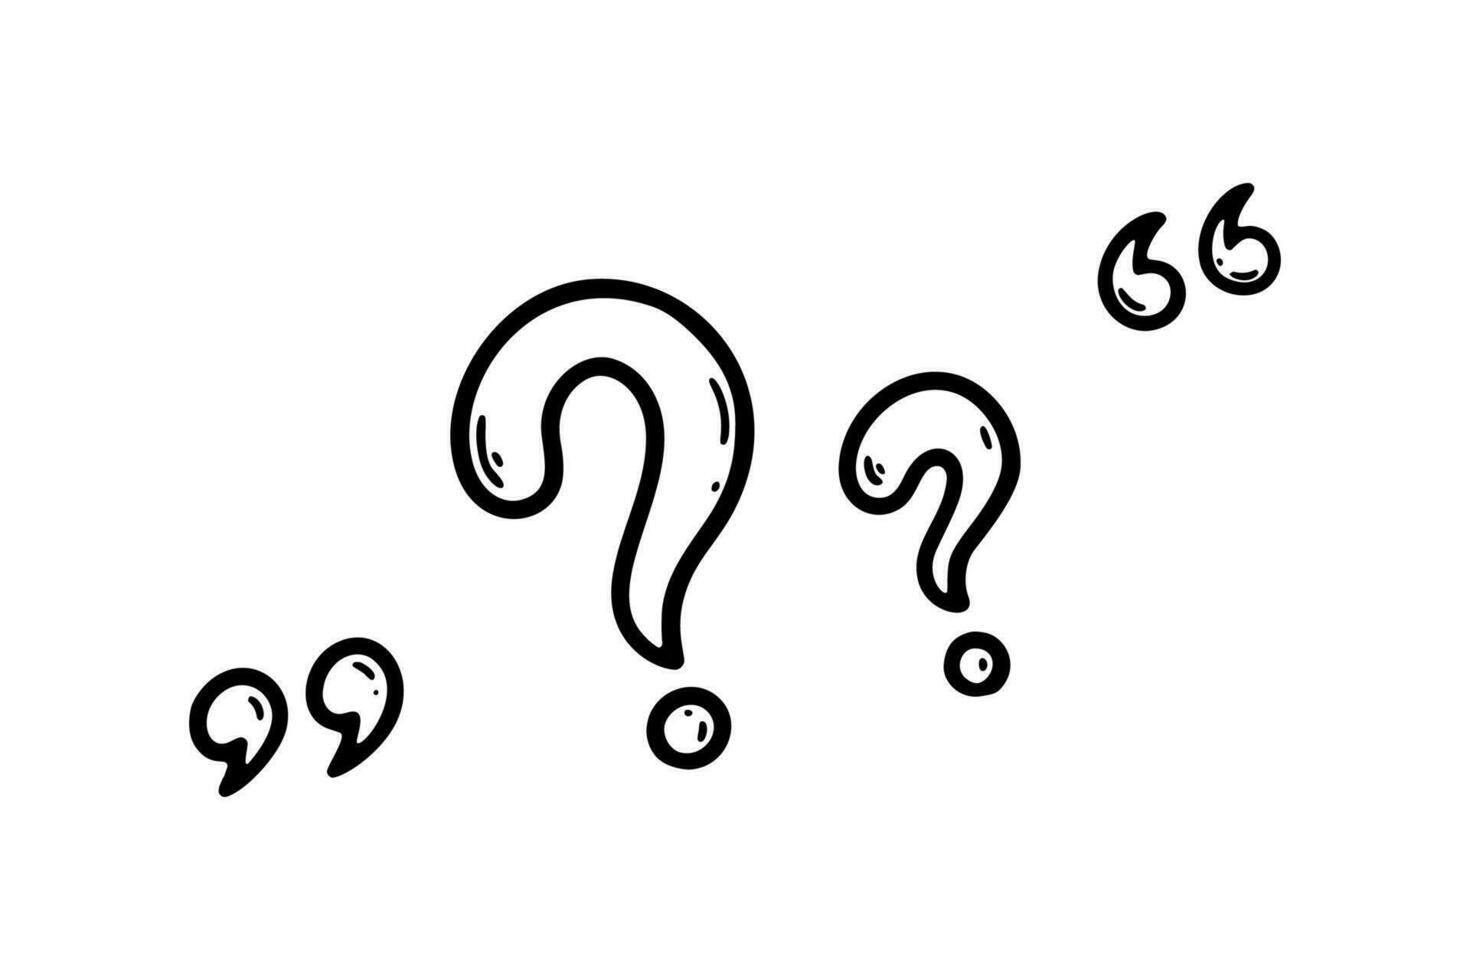 handgeschreven vraag Mark in schetsen tekening stijl. probleem, ongerustheid, twijfel, verwardheid, misverstand symbool. grafisch inkt interpunctie icoon vector